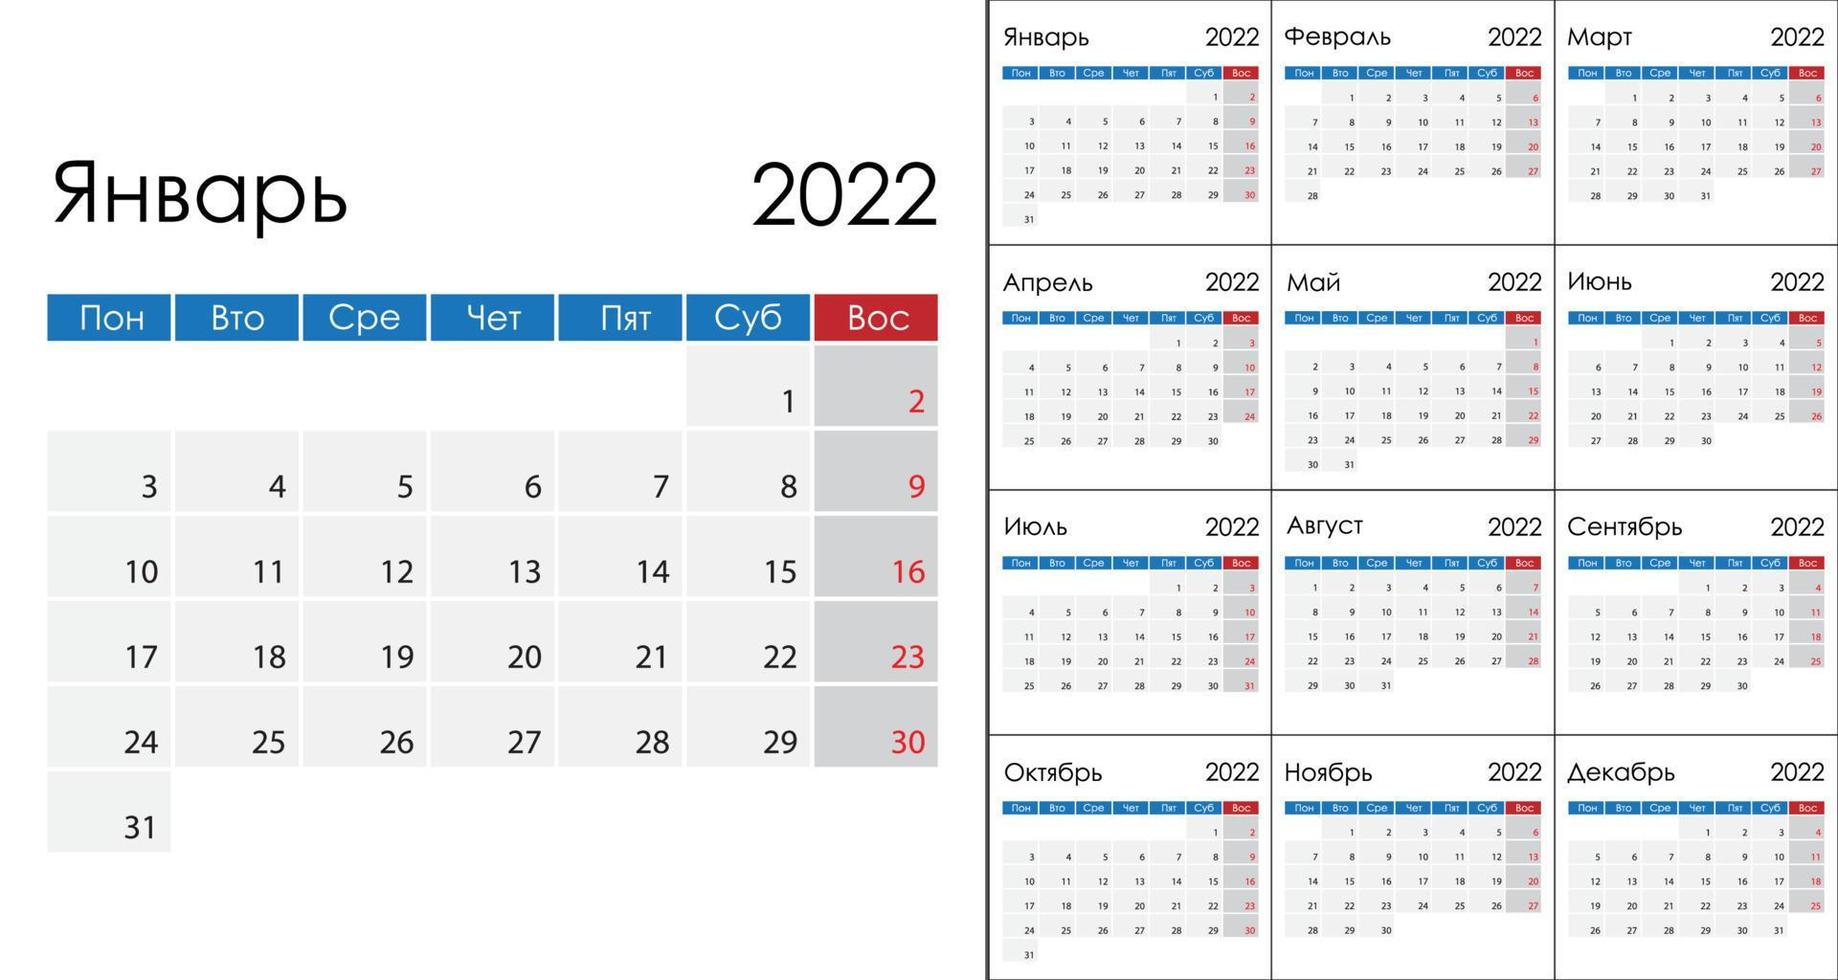 Facile calendrier 2022 sur russe langue, la semaine début sur lundi. vecteur